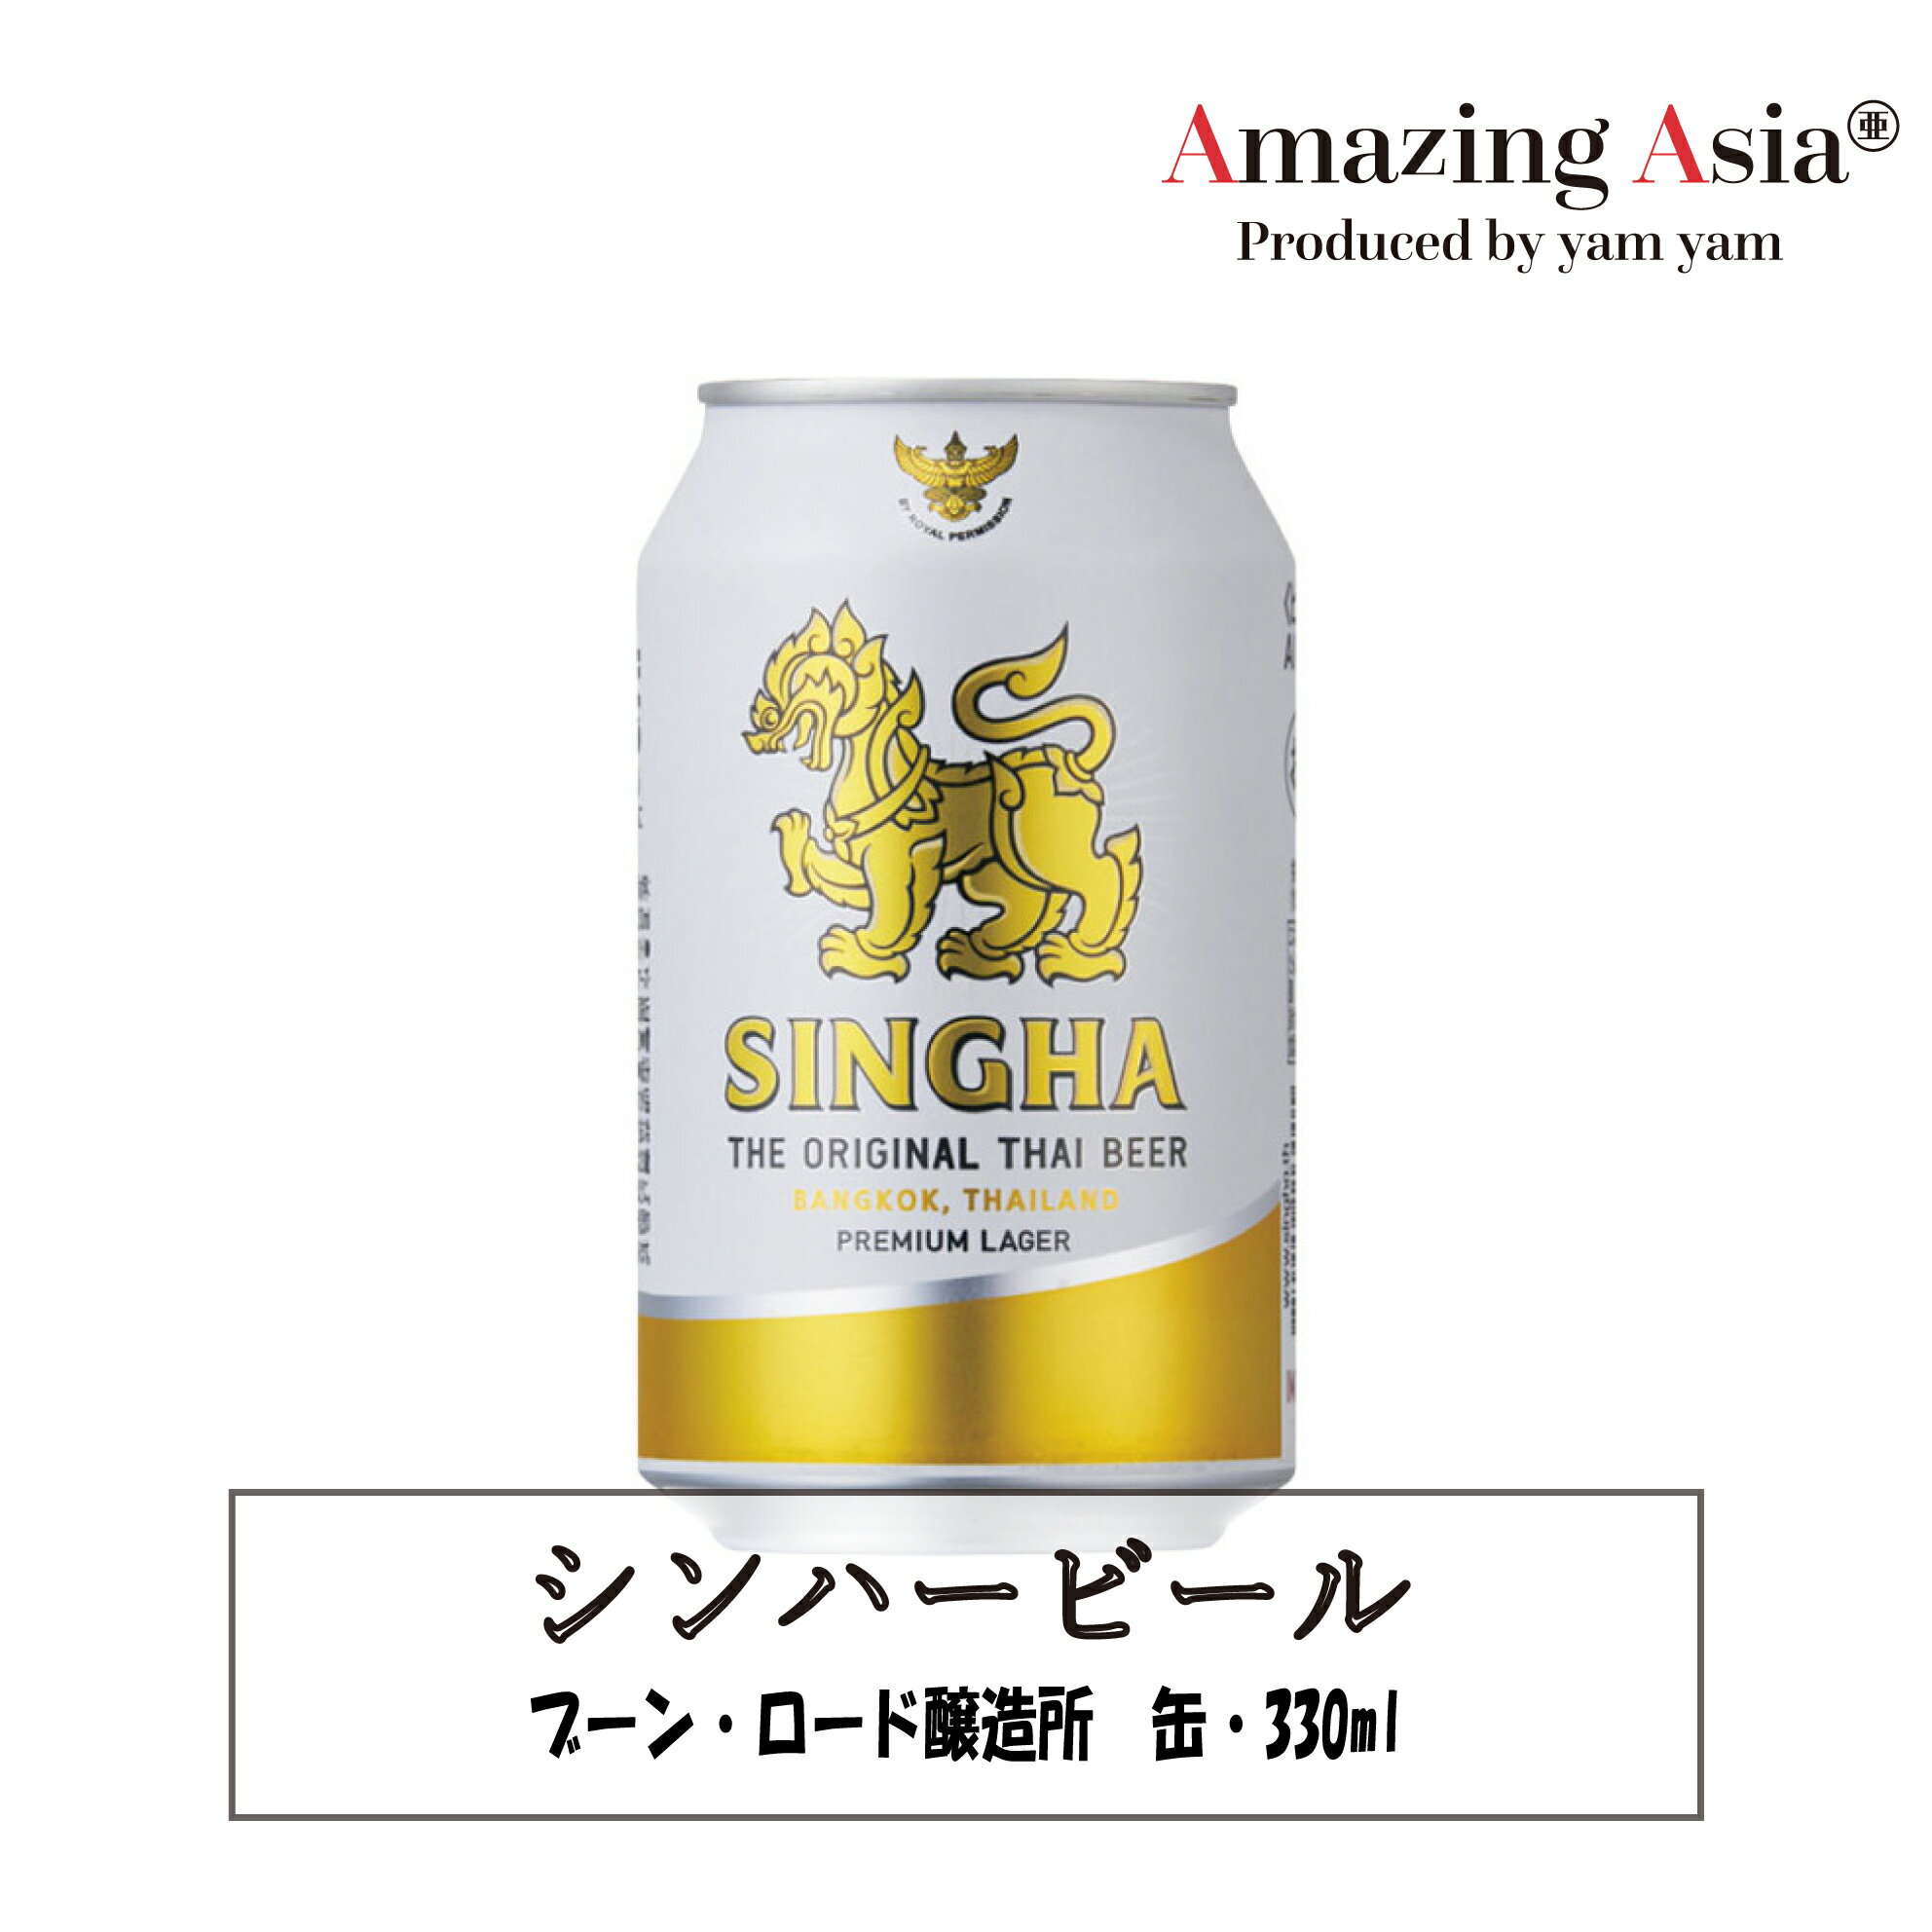 名称 シンハービール 缶 原材料名 麦芽、ホップ、糖類 内容量 1缶330ml アルコール度数 5.0％ 原産国 タイ日本でも人気のタイビール。シンハとは神話に出てくる獅子のこと。 1933年から愛されているタイでは定番ブランドのプレミアムラガービールです。 エスニックやタイ料理との相性も抜群で、すっきりした飲み口の爽快ラガービール。